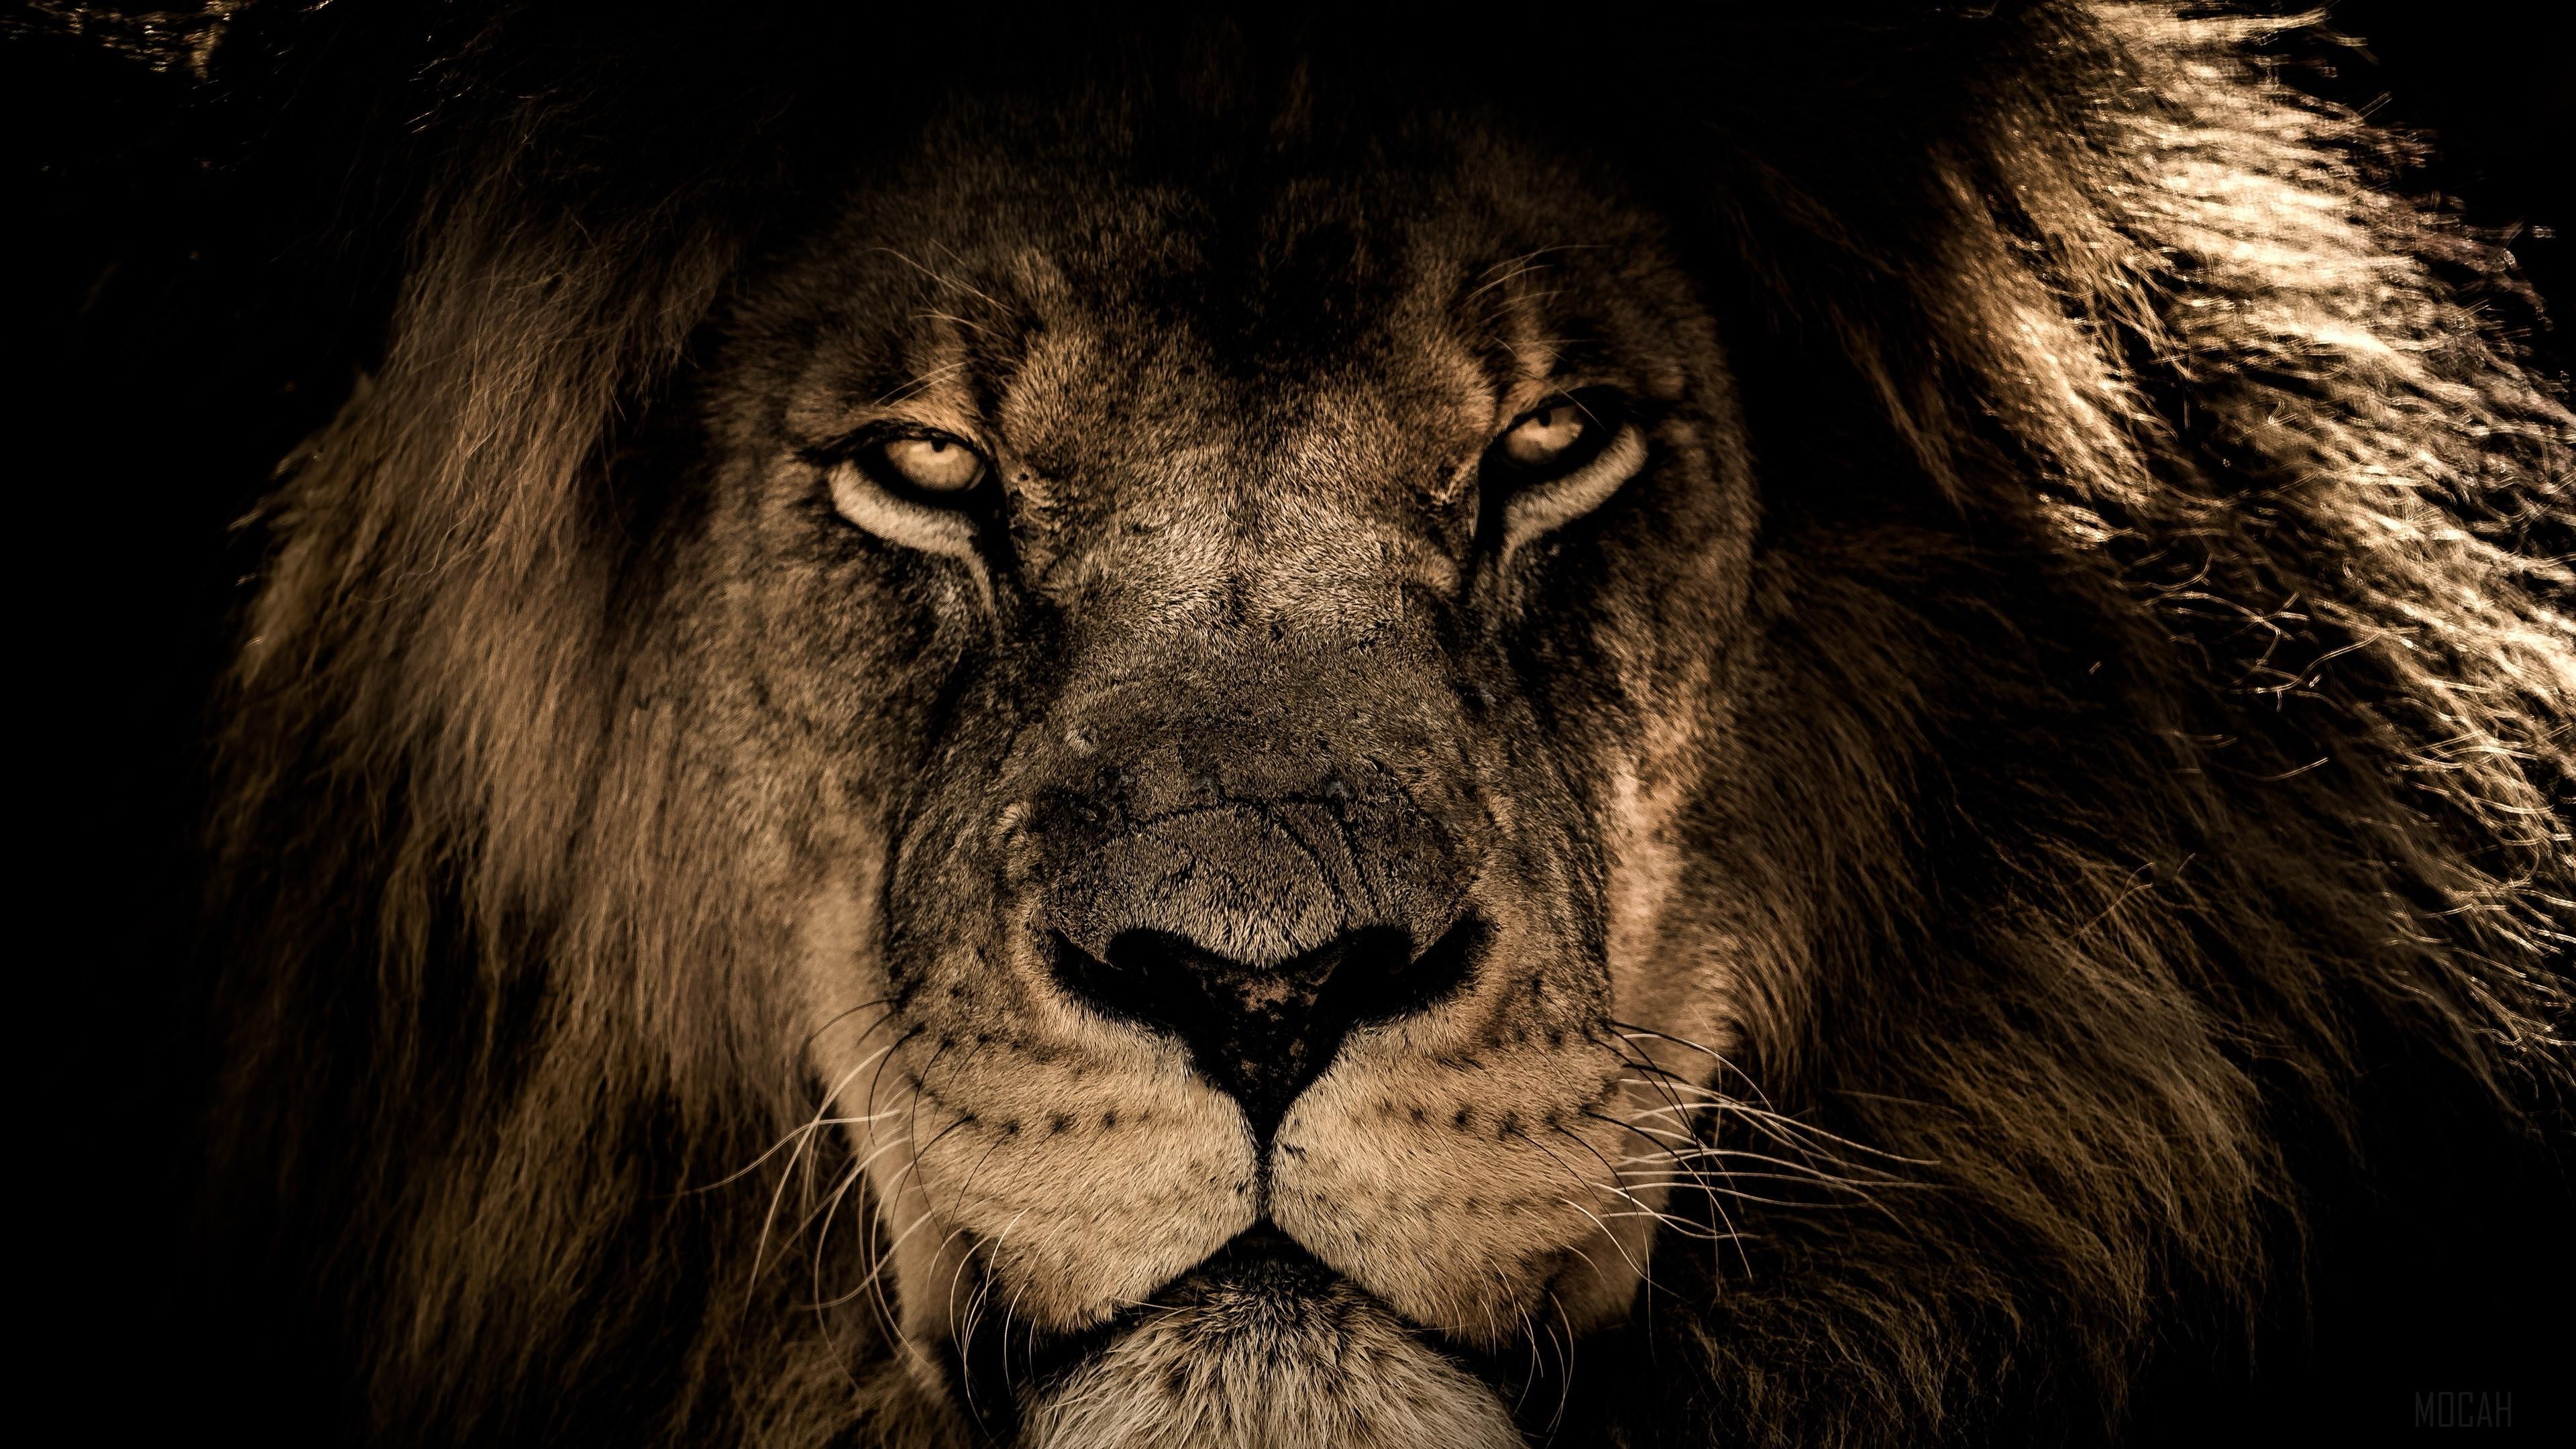 HD wallpaper, African Lion Face Closeup 4K